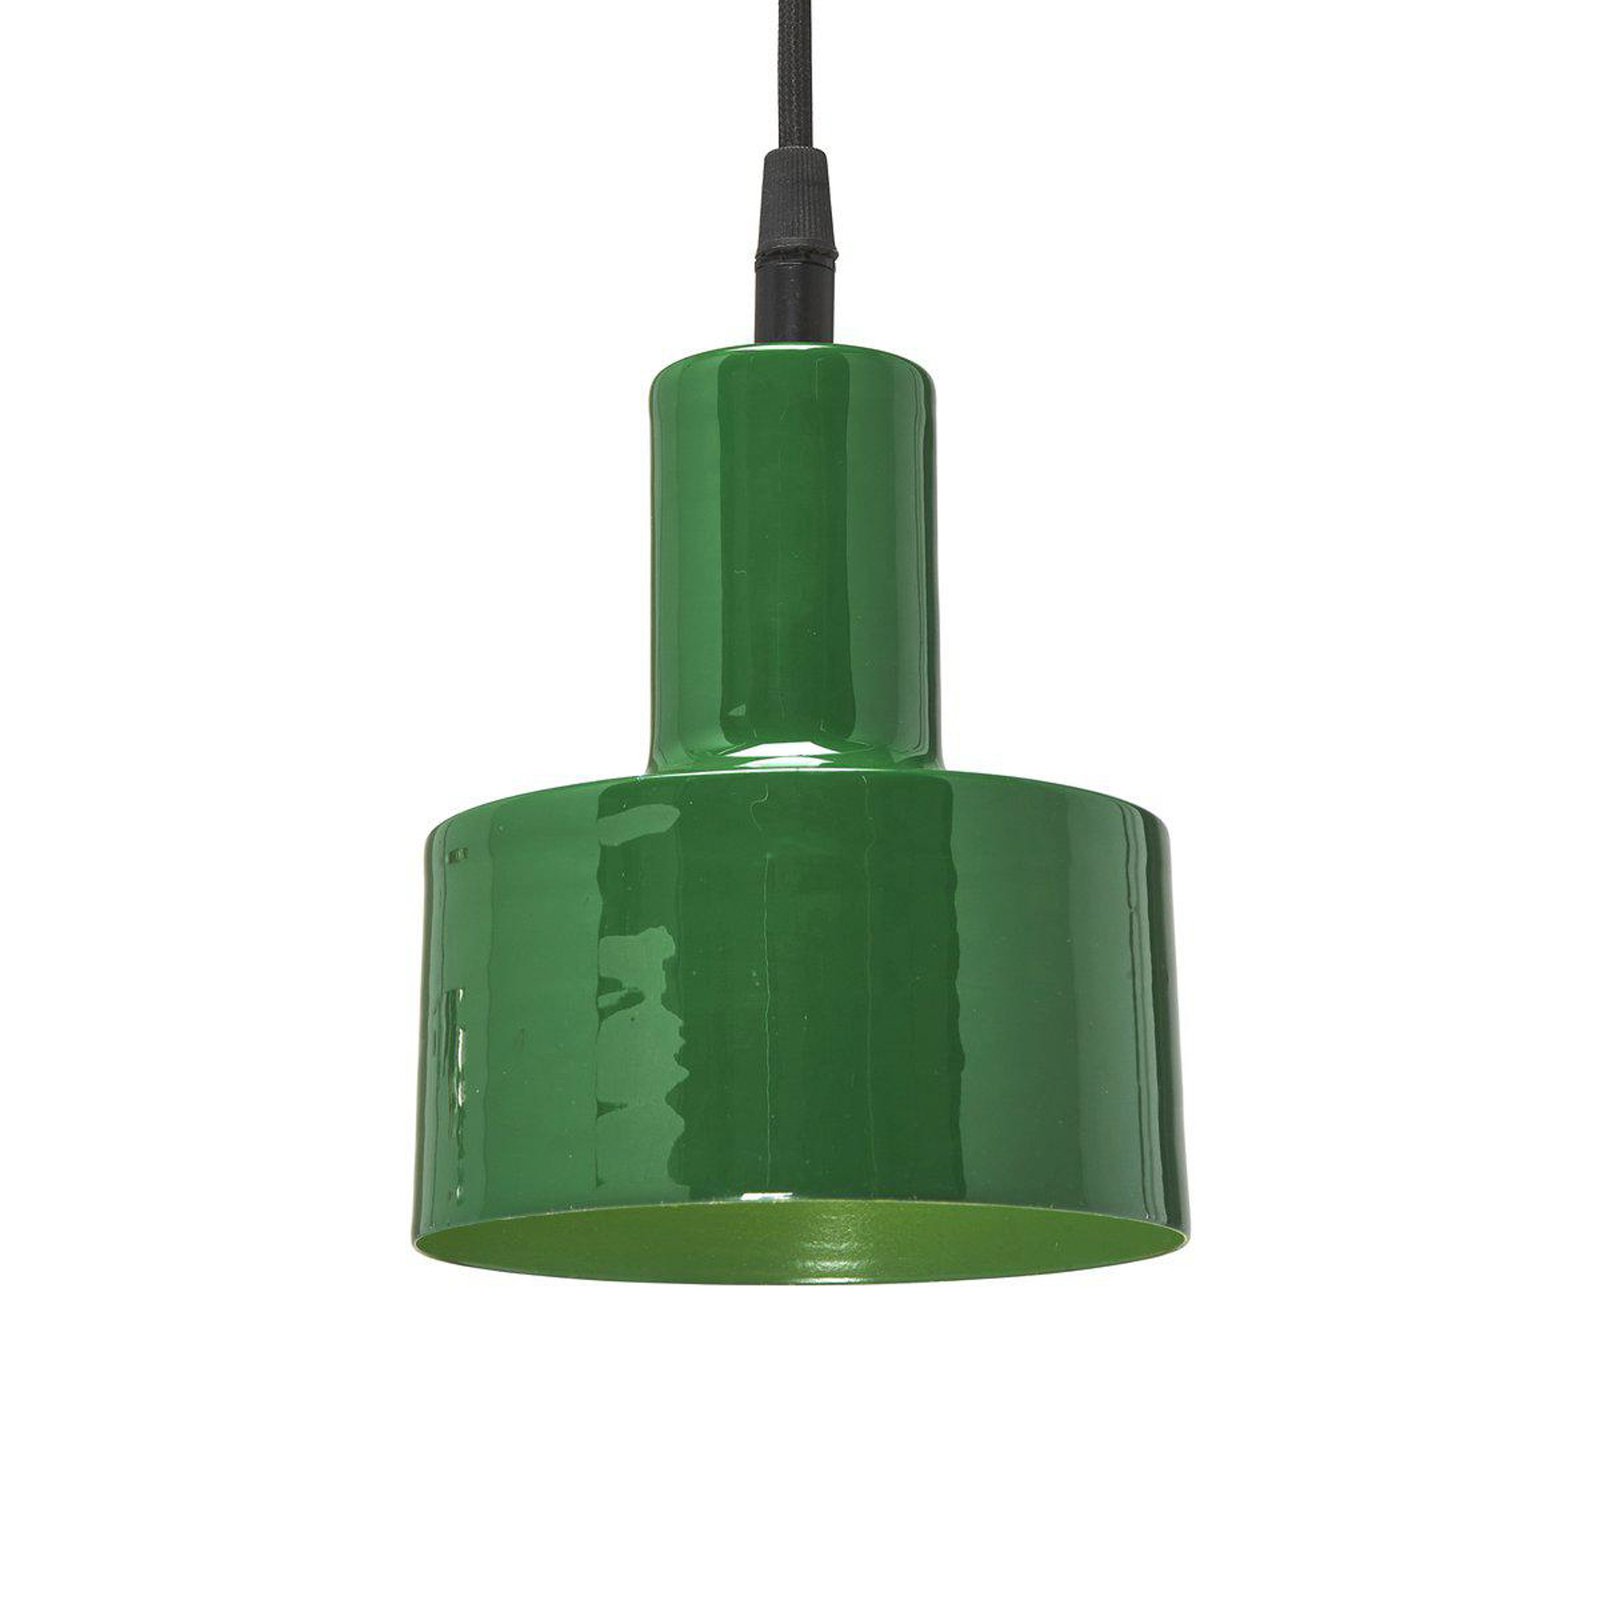 PR Home Solo Small hanglamp Ø 13 cm groen